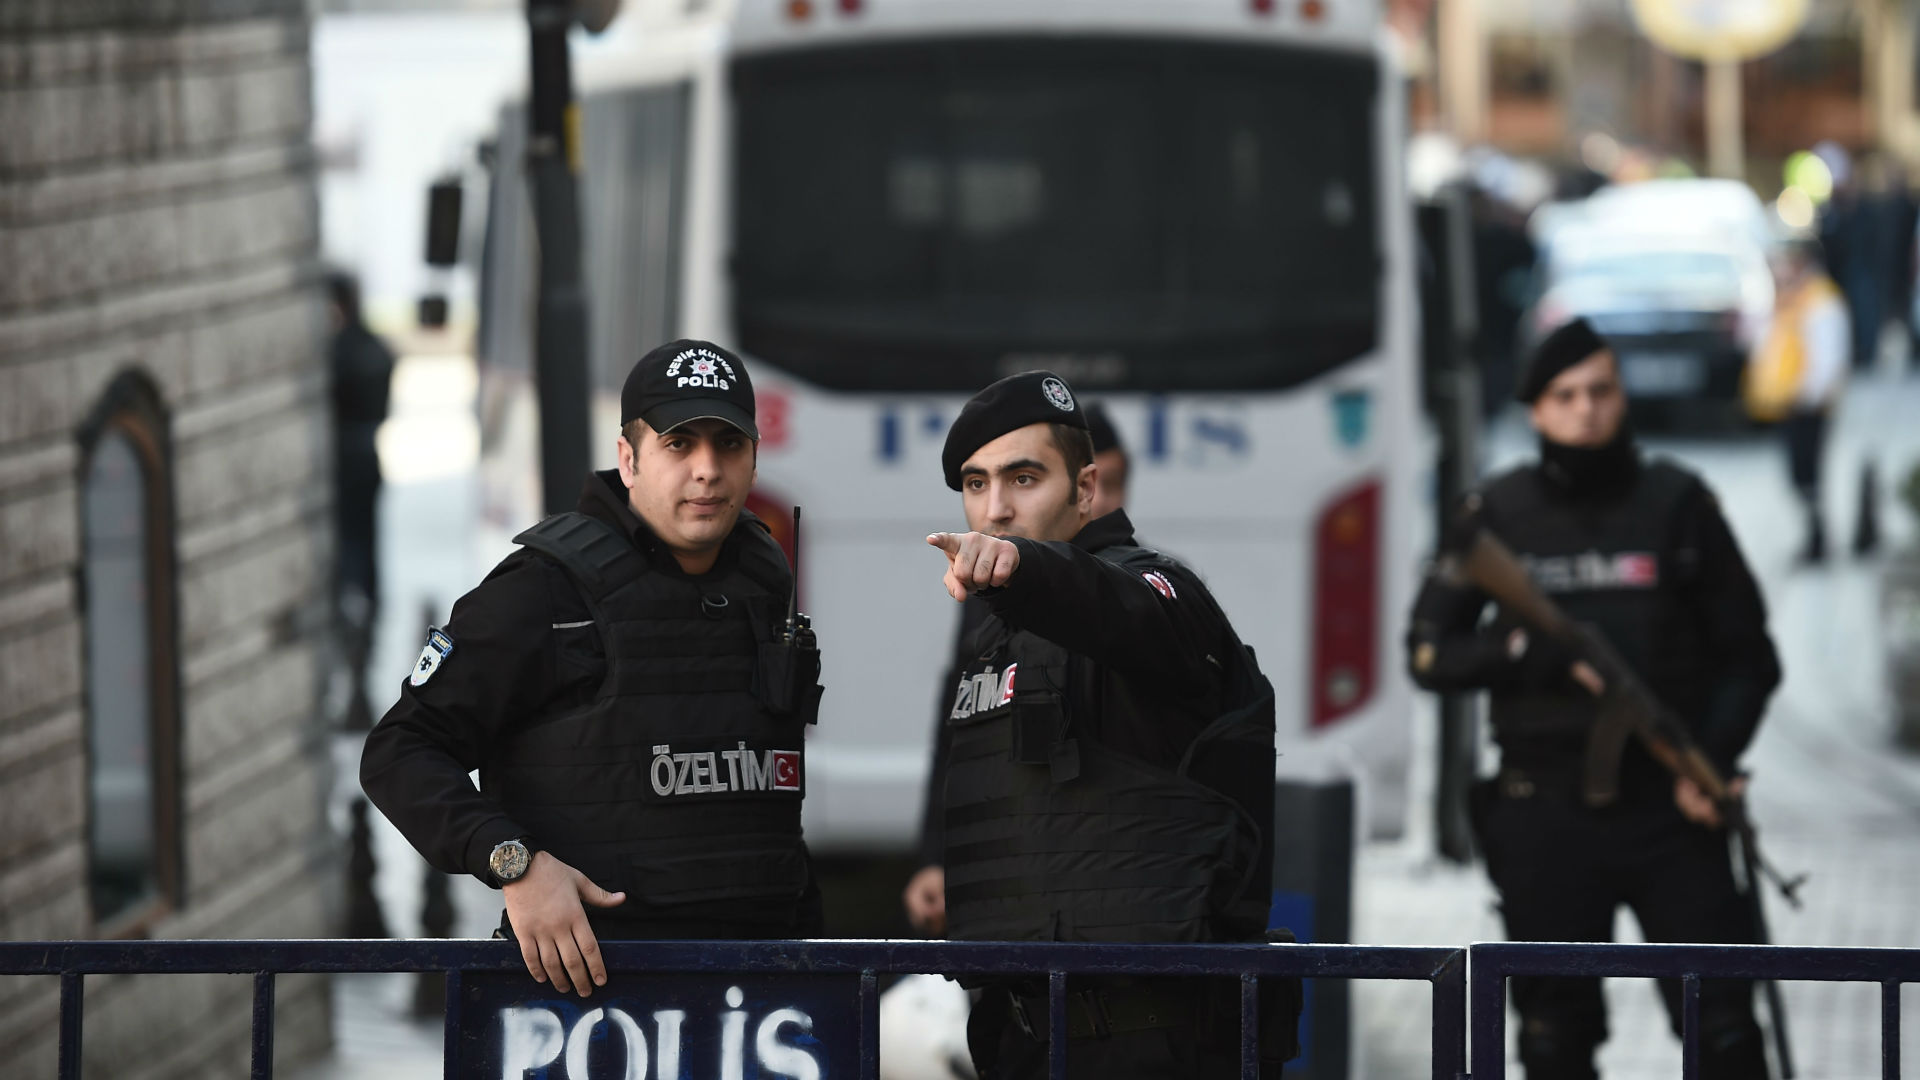 Οι τουρκικές αρχές συνέλαβαν Έλληνα υπήκοο για παράνομη είσοδο σε στρατιωτική περιοχή στον Έβρο